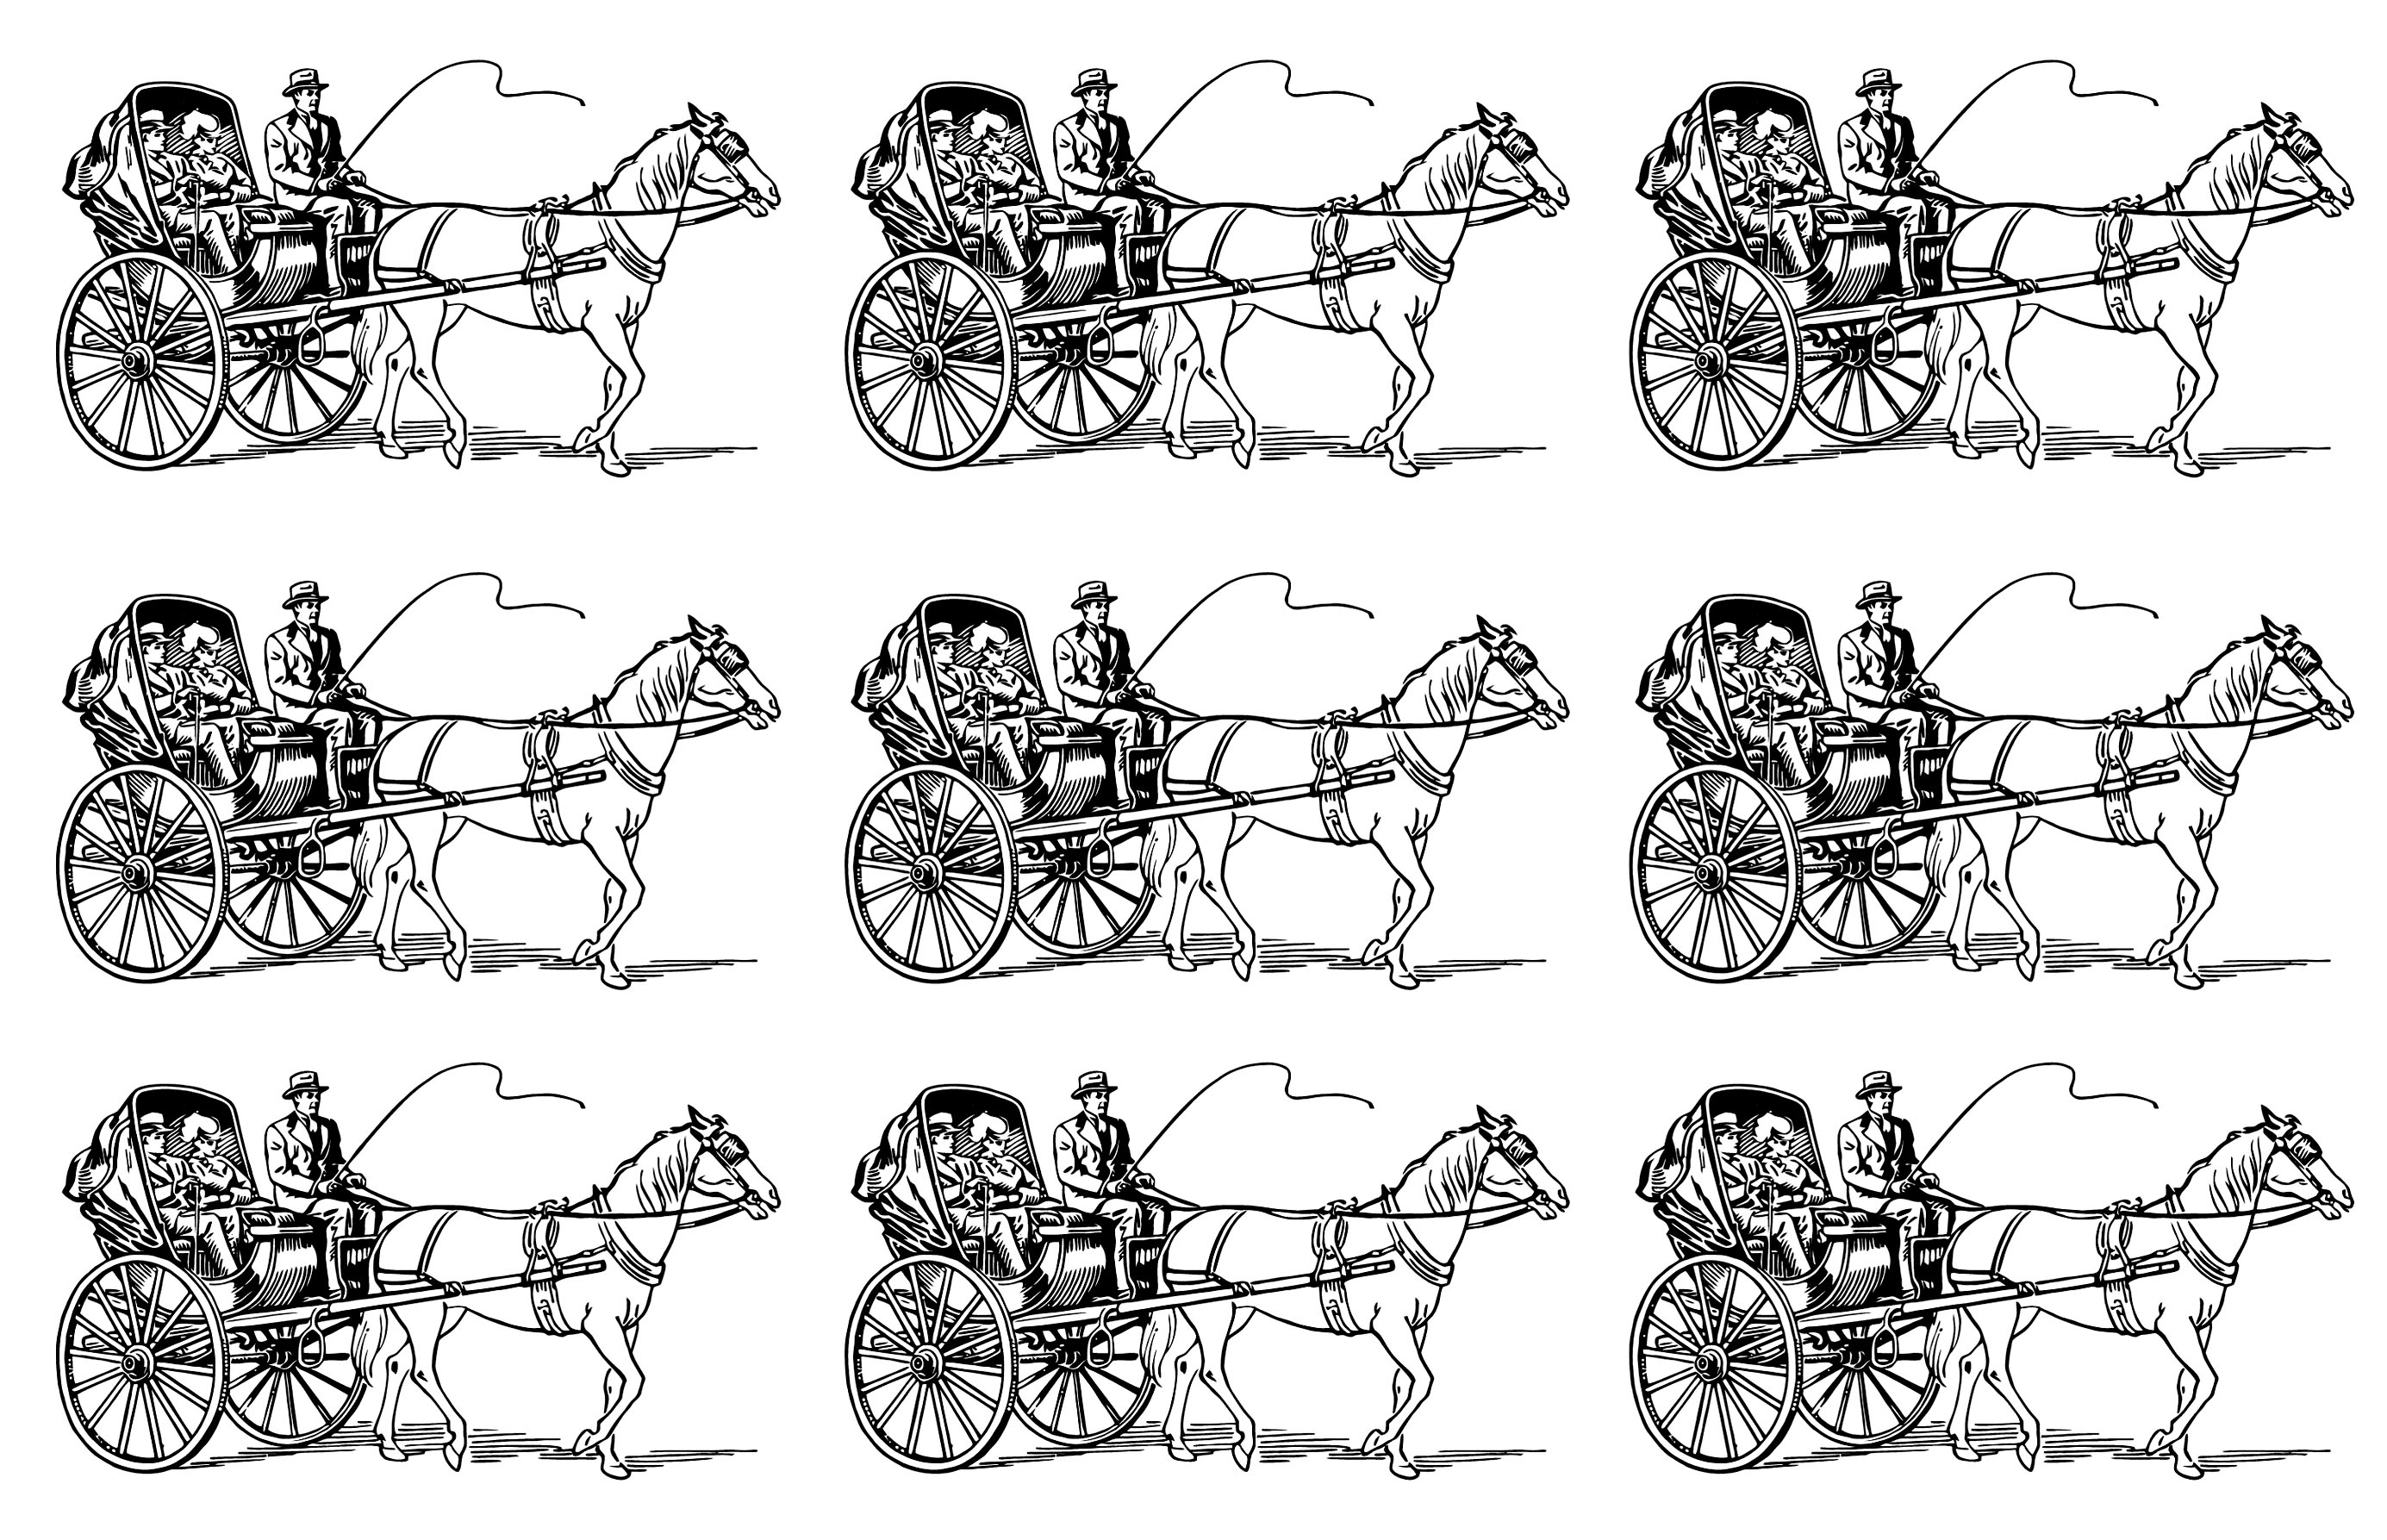 Imagem de mosaico muito vintage de uma carruagem puxada por cavalos que transporta um homem e uma mulher. Pinta esta carruagem de 6 maneiras diferentes!